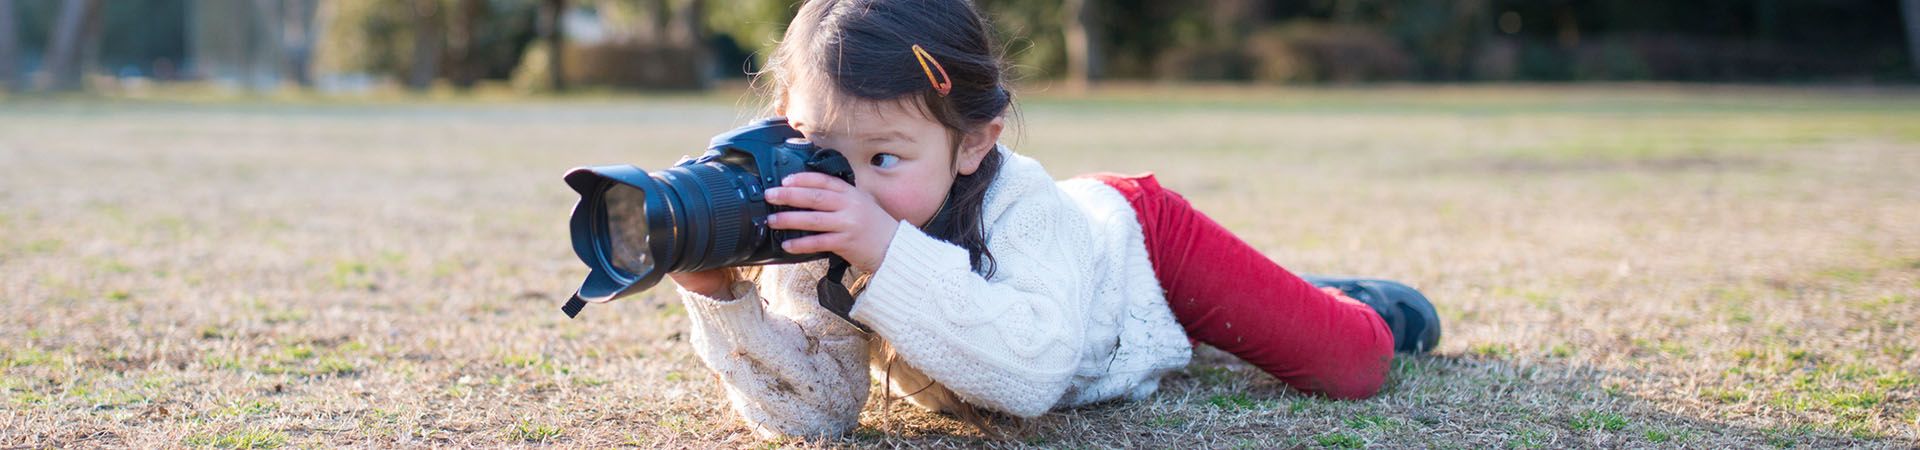 Filmen voor kinderen - Klein meisje met een camera